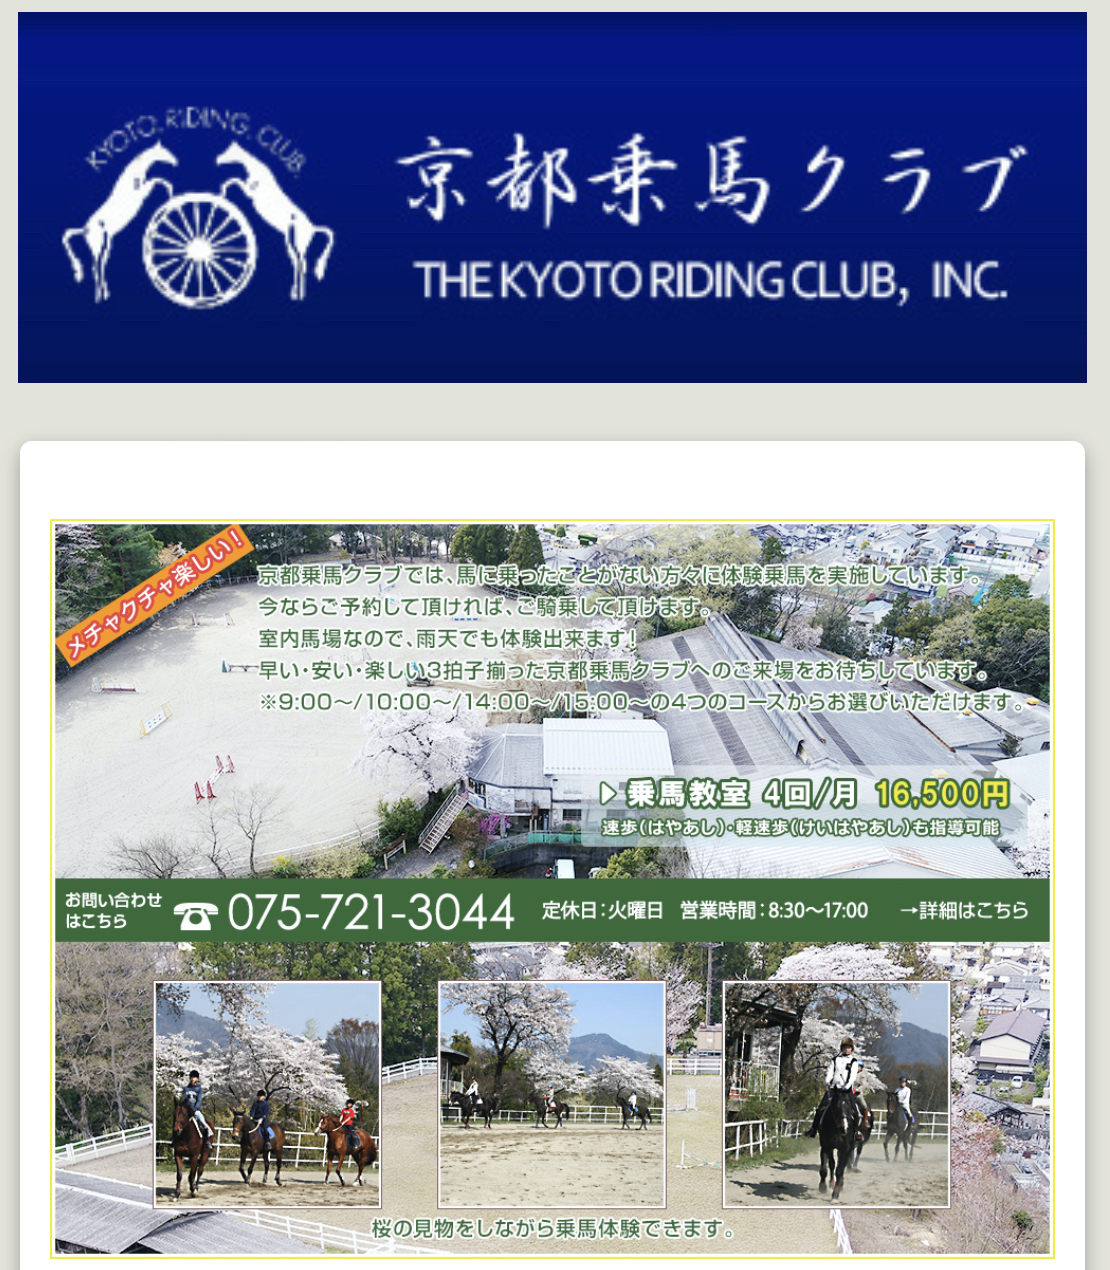 京都乗馬クラブ公式サイト